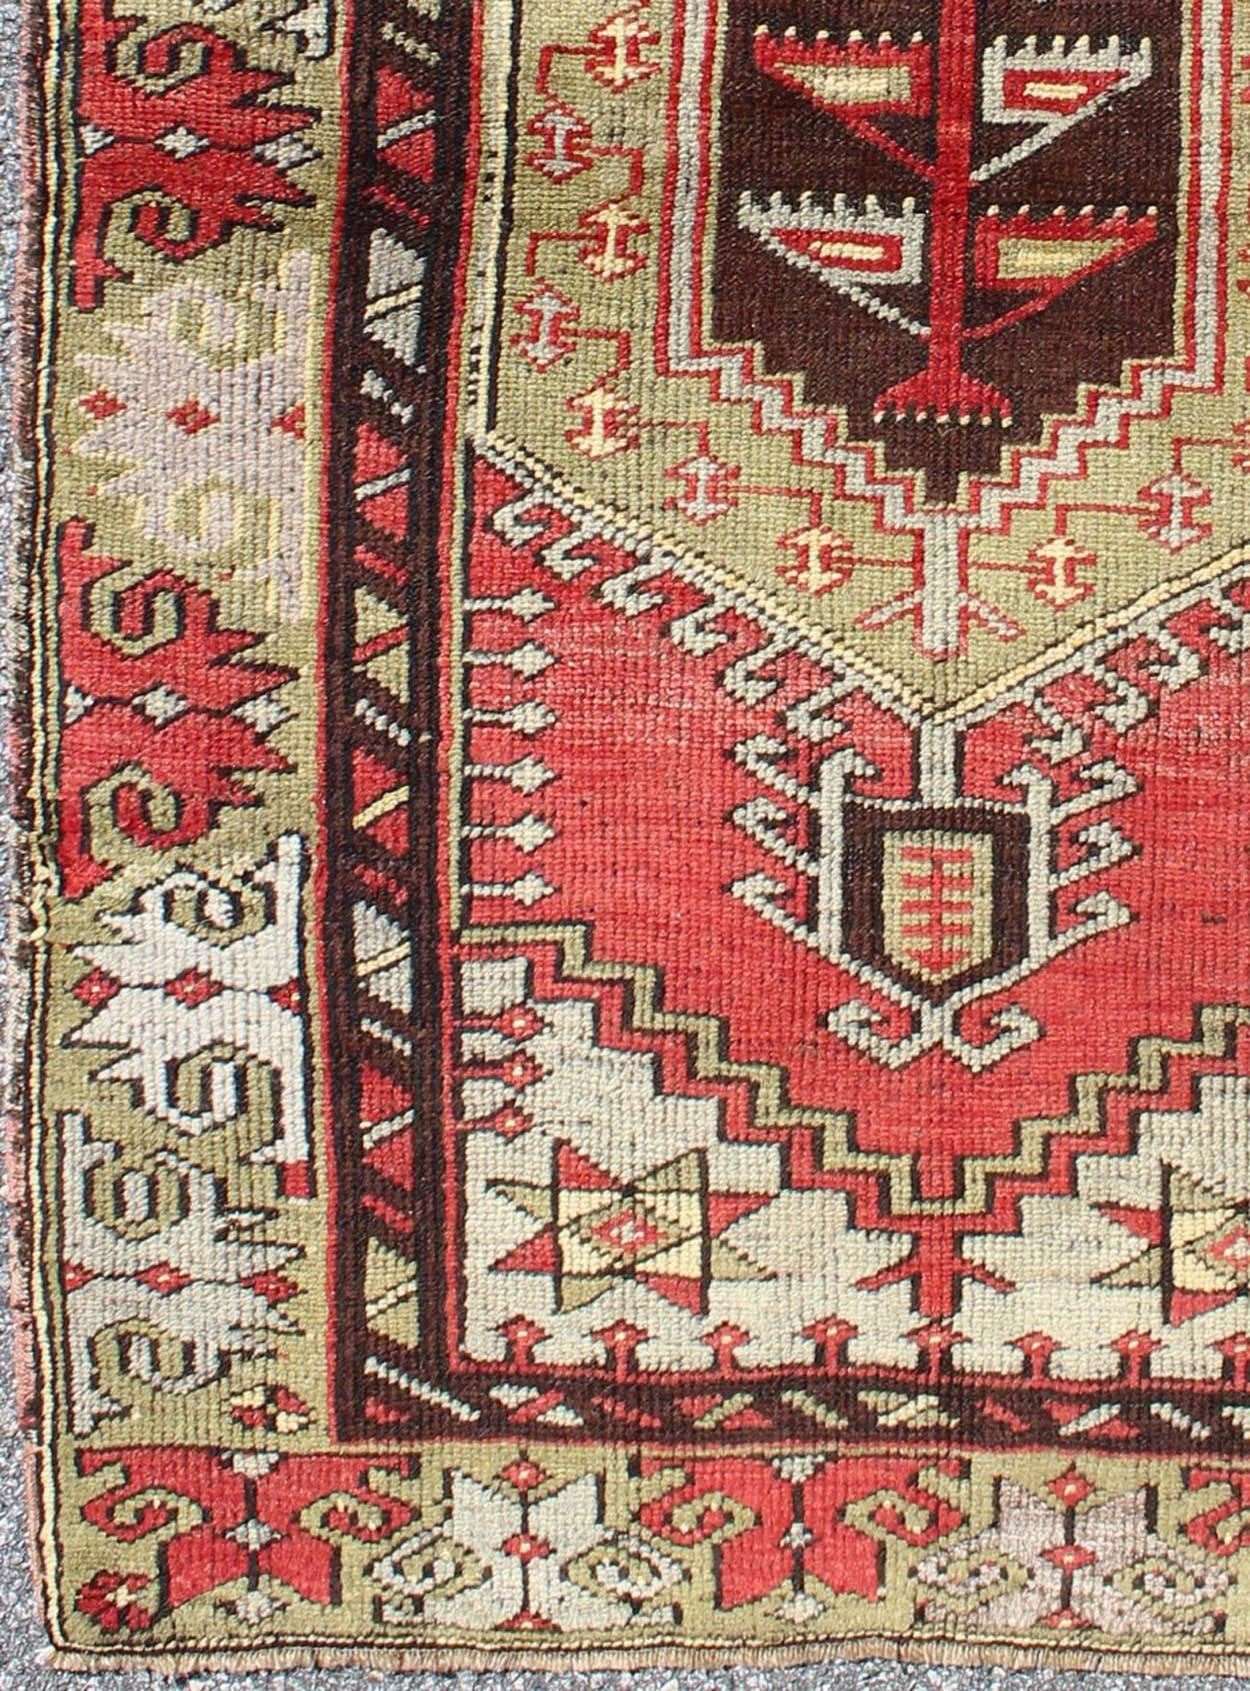 Vieux tapis turc Oushak avec médaillon géométrique tribal en rouge et vert, Keivan Woven Arts/ tapis # TU-DUR-3458, pays d'origine / type : Turquie / Oushak, vers le milieu du 20e siècle.

Mesures : 2'11 x 5'.

Ce tapis turc Oushak vintage (vers le